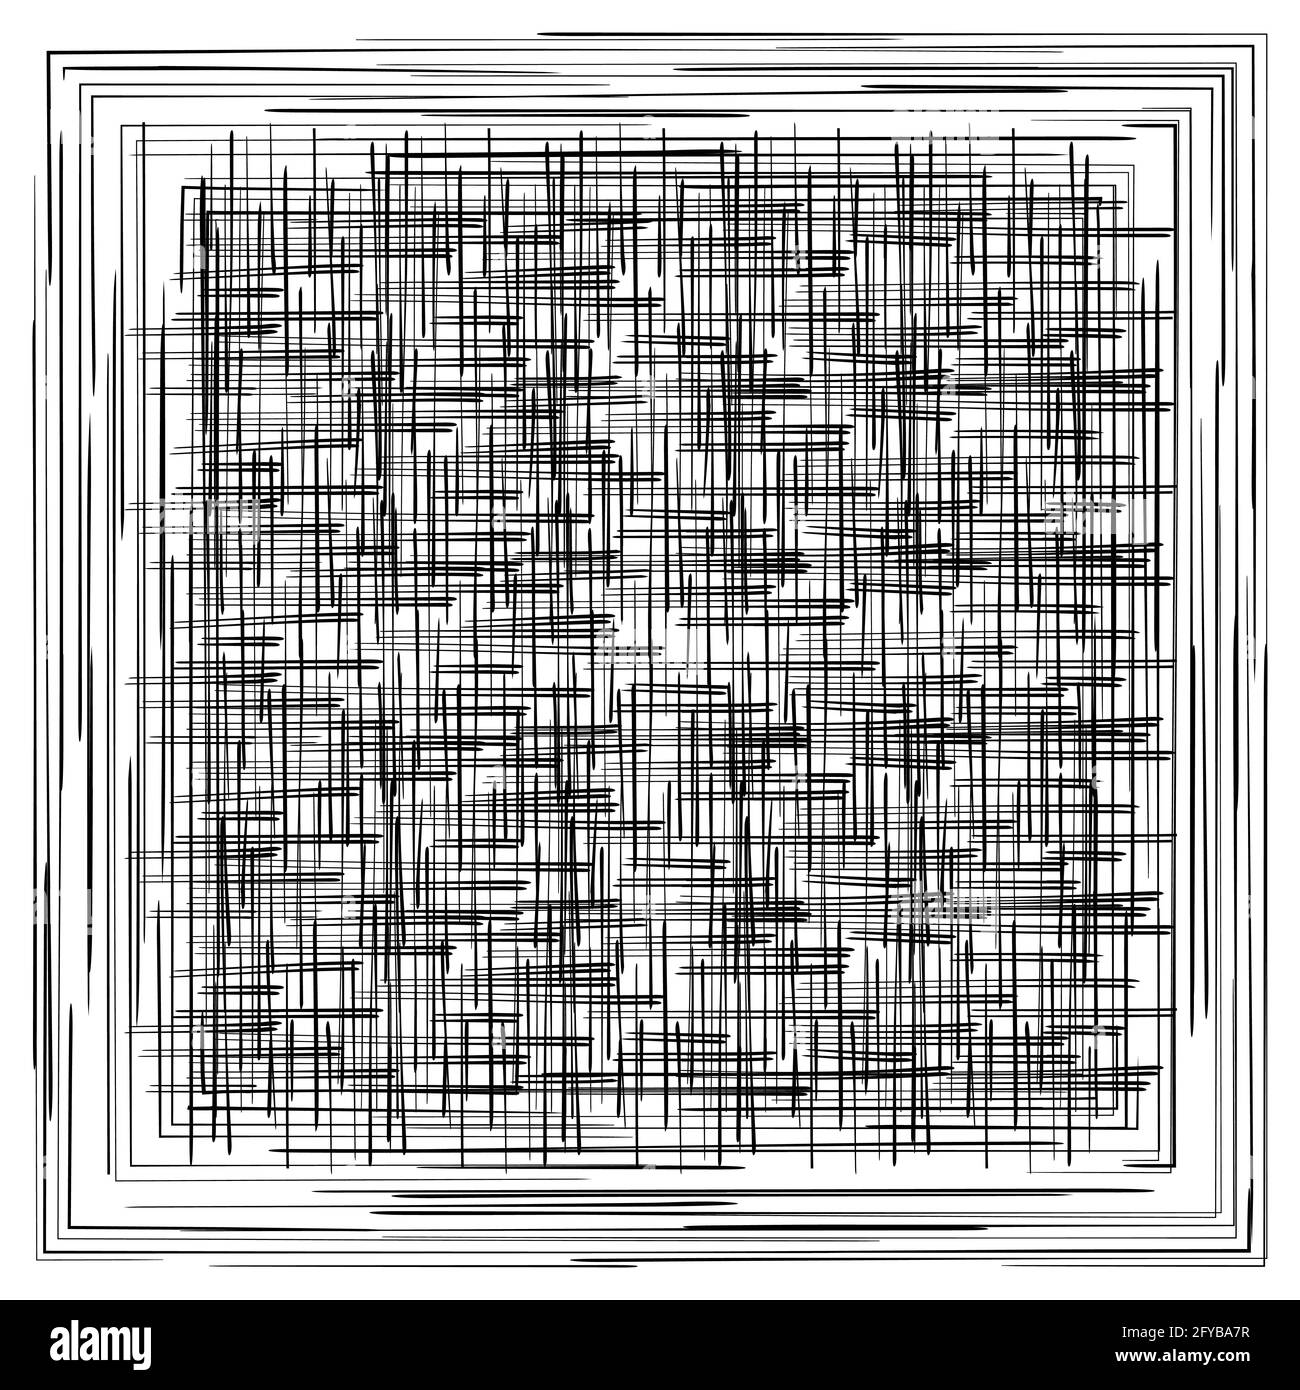 Schwarzer quadratischer Rahmen. Strukturiertes Muster mit Scrabble-Linien. Abstrakter Hintergrund. Doodle-Stil. Isolierte Vektorgrafik auf weißem Hintergrund Stock Vektor